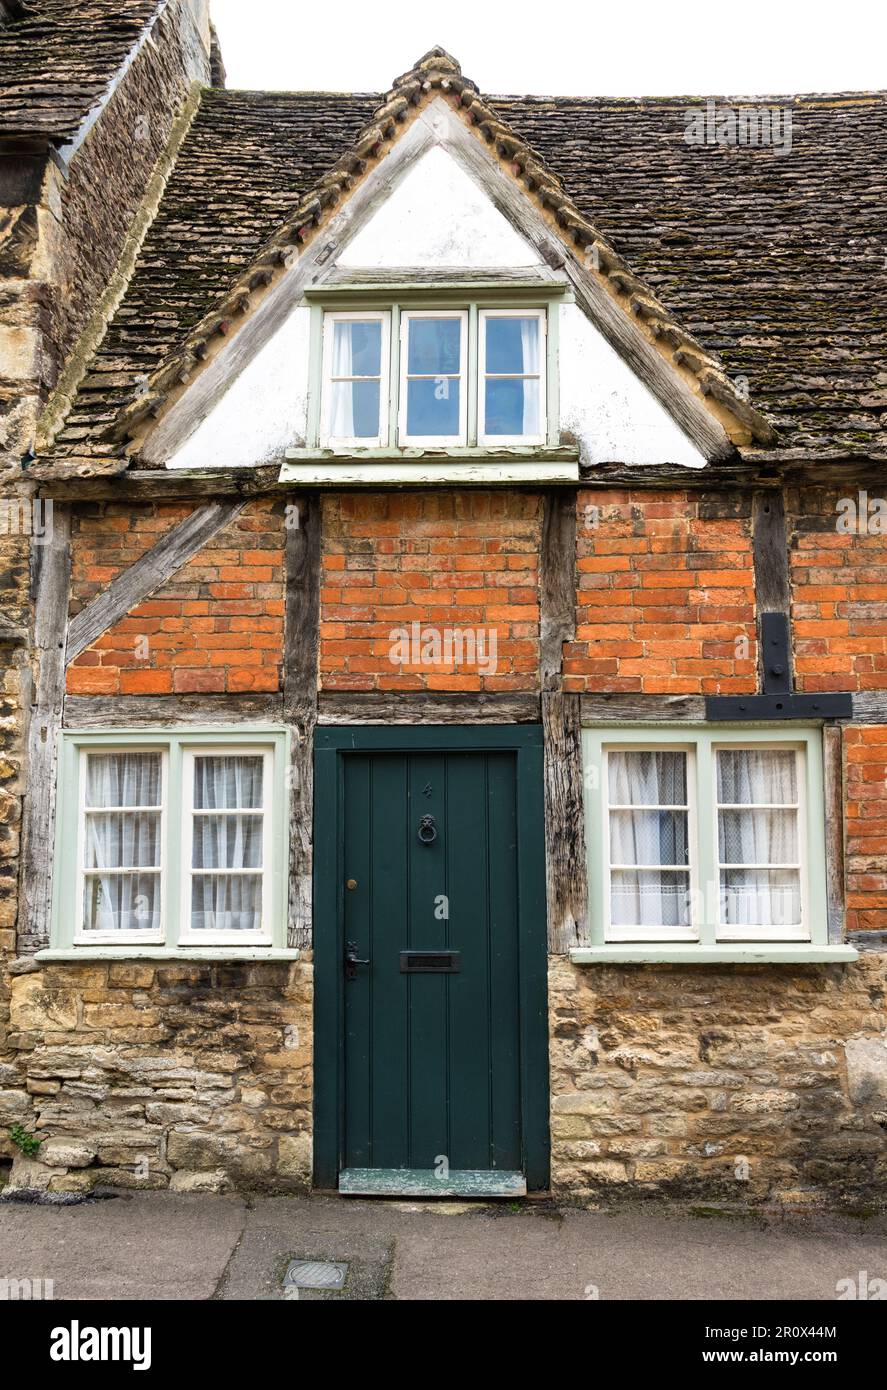 Un cottage traditionnel dans le village de Lacock, Wiltshire, Angleterre Banque D'Images